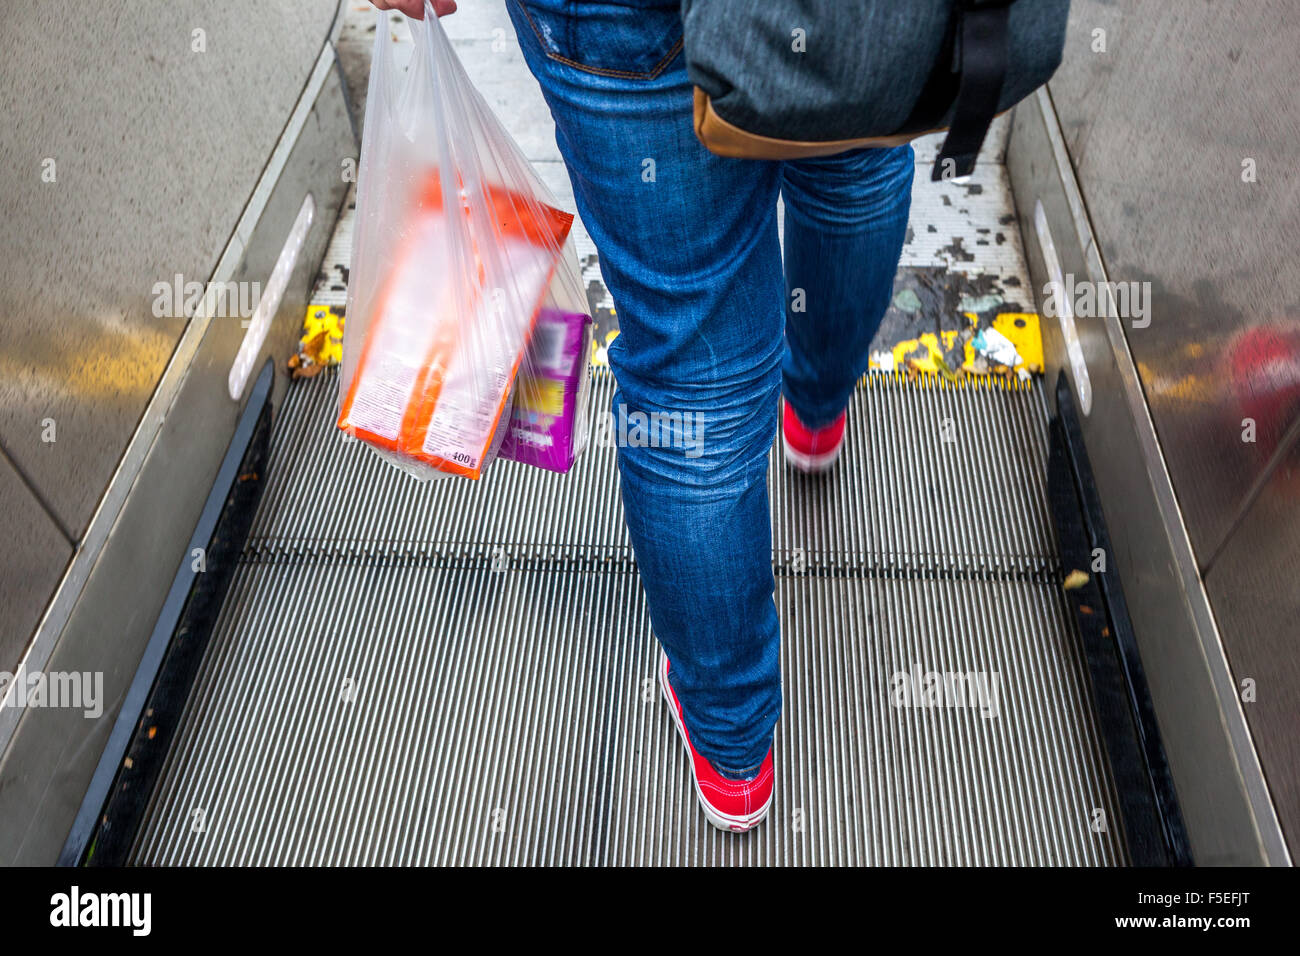 Acheter un sac en plastique, sortie de métro, escalator, Prague, République Tchèque Banque D'Images